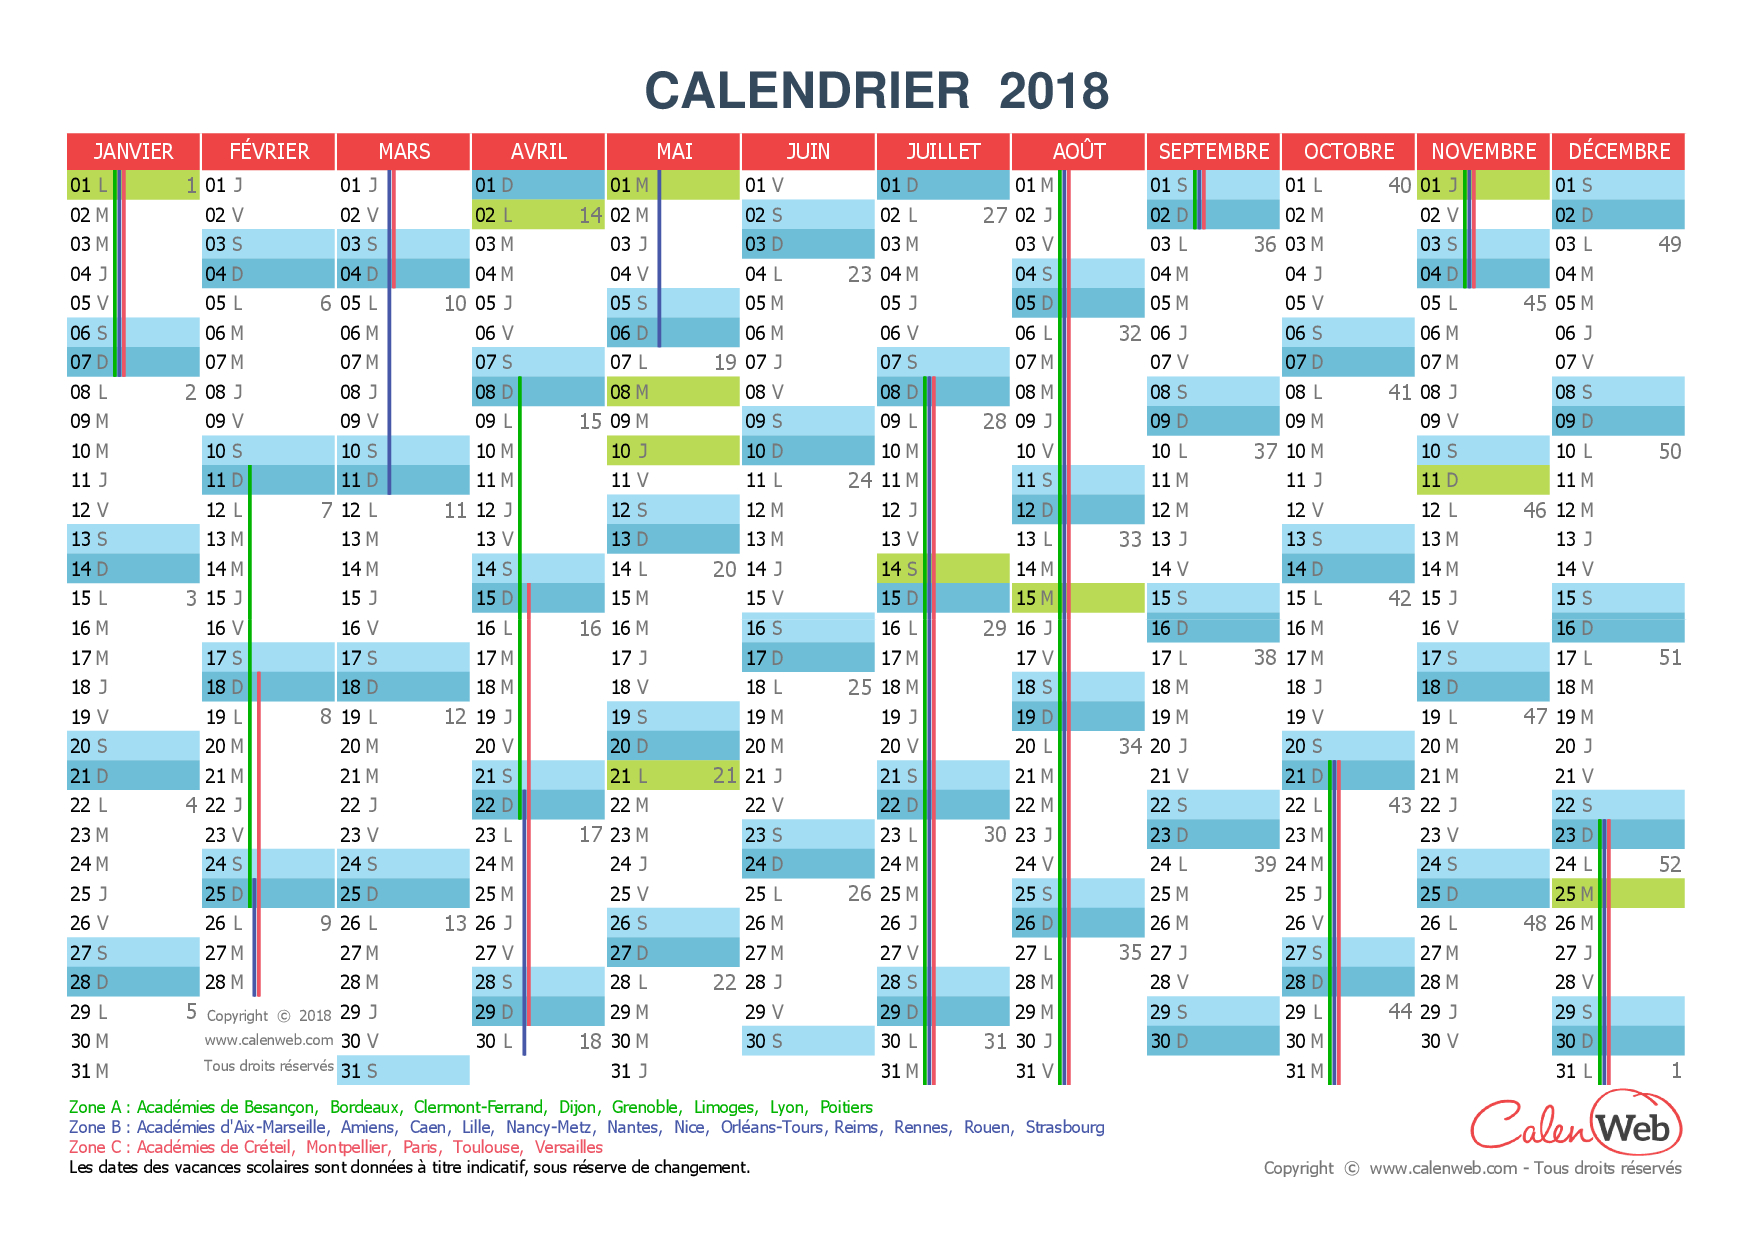 Calendrier Annuel - Année 2018 Avec Jours Fériés Et Vacances concernant Calendrier 2018 À Imprimer Avec Vacances Scolaires